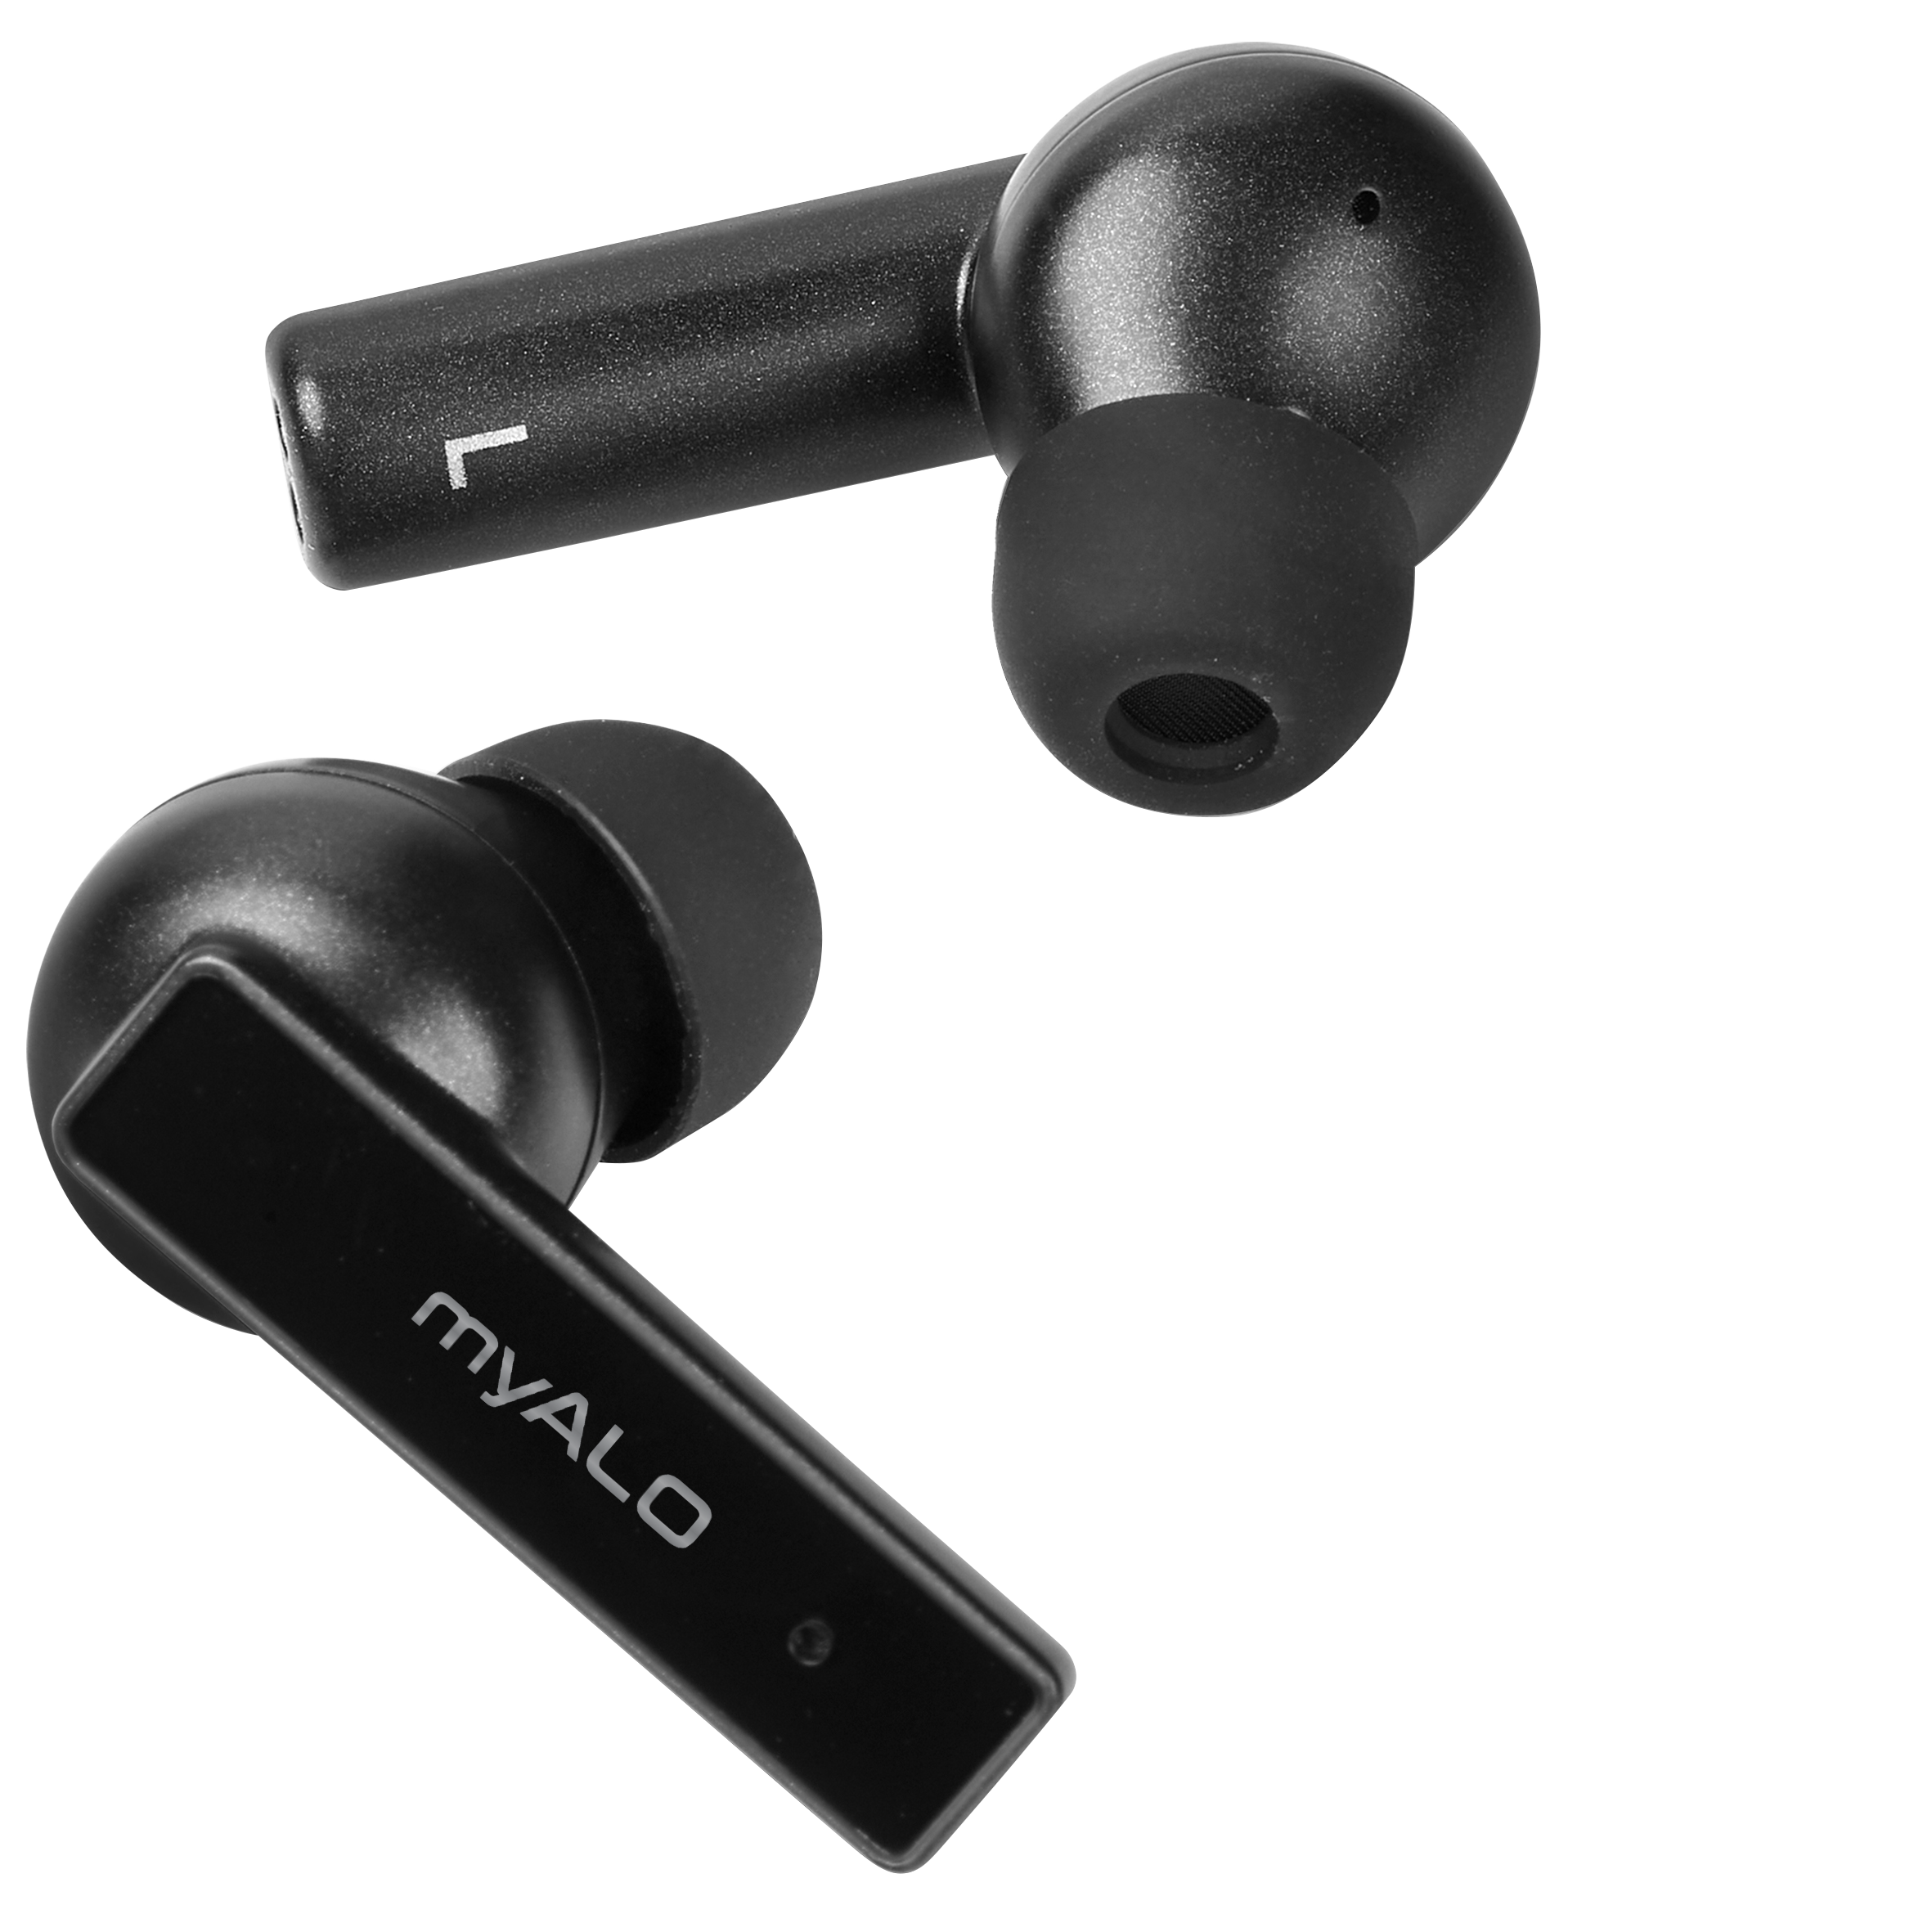 Tai nghe không dây myALO Z-One Pro: tai nghe Bluetooth 5.3; chống nước; pin 40H; điều khiển cảm ứng, thiết kế công thái học, vỏ hợp kim đúc nguyên khối